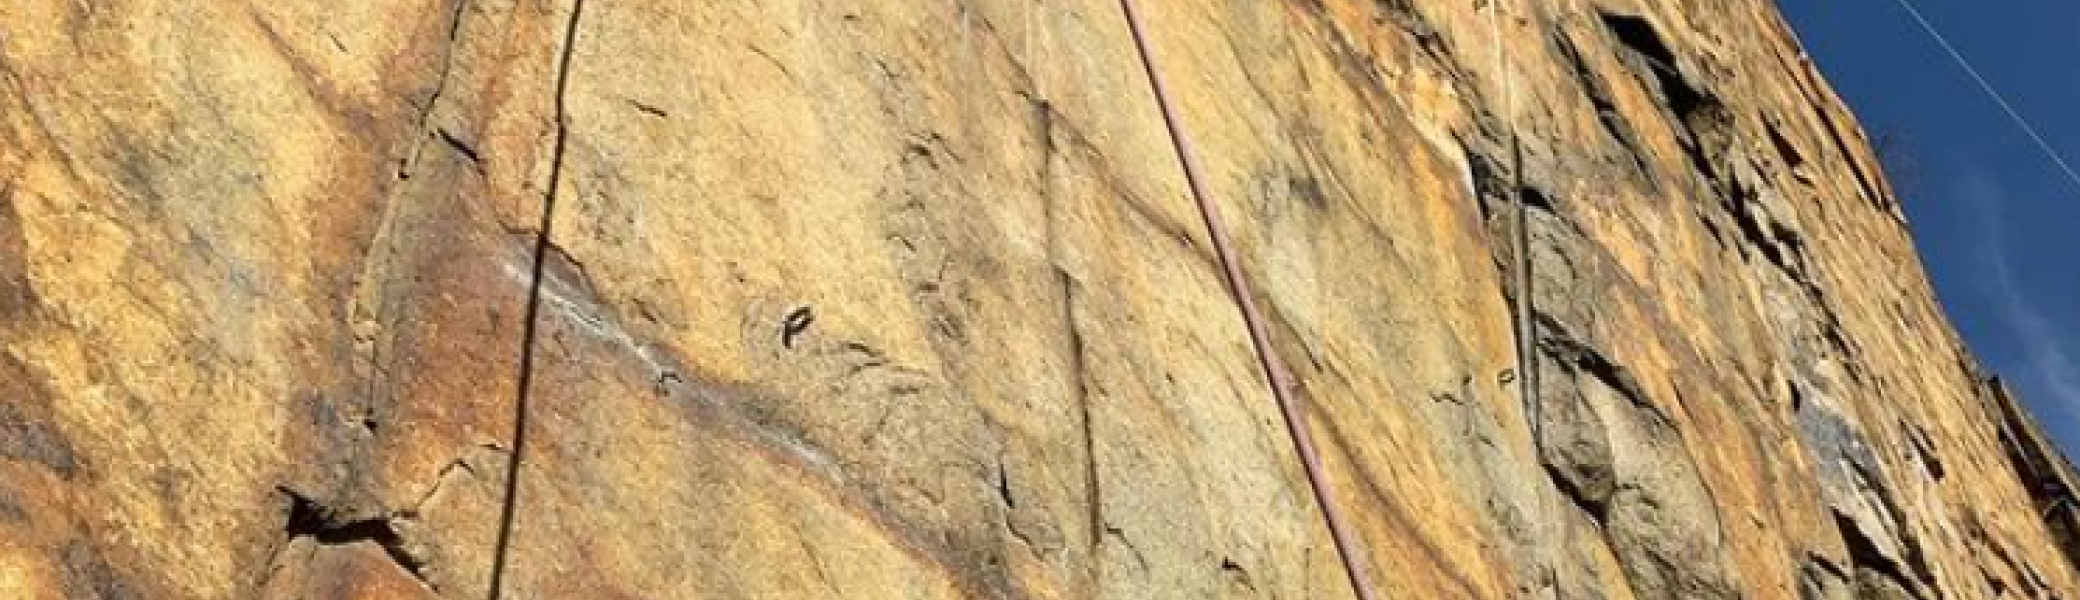 Kletternde Person an einer Felswand | © Beate Kunz